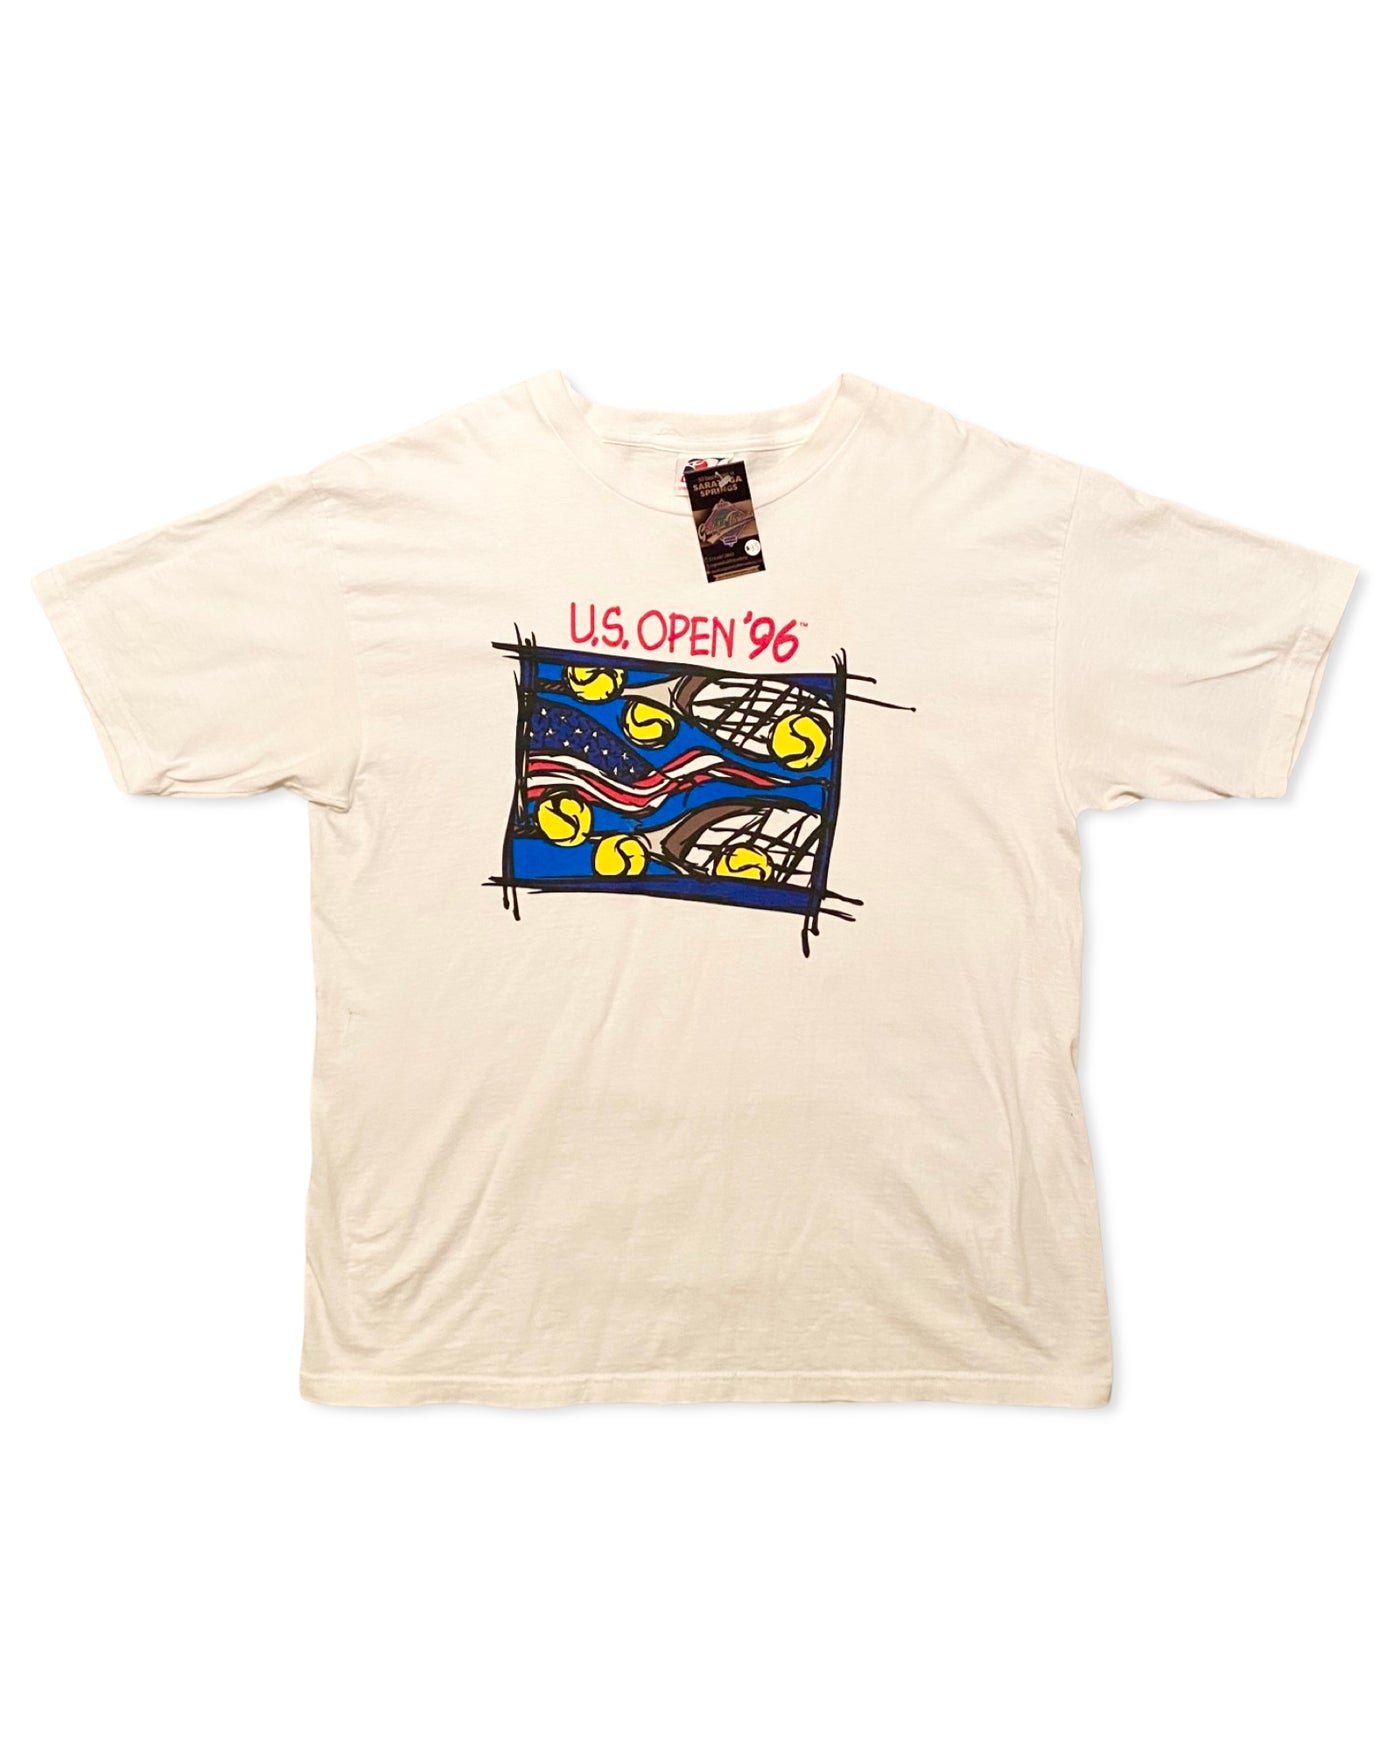 Vintage 1996 US Open T-Shirt